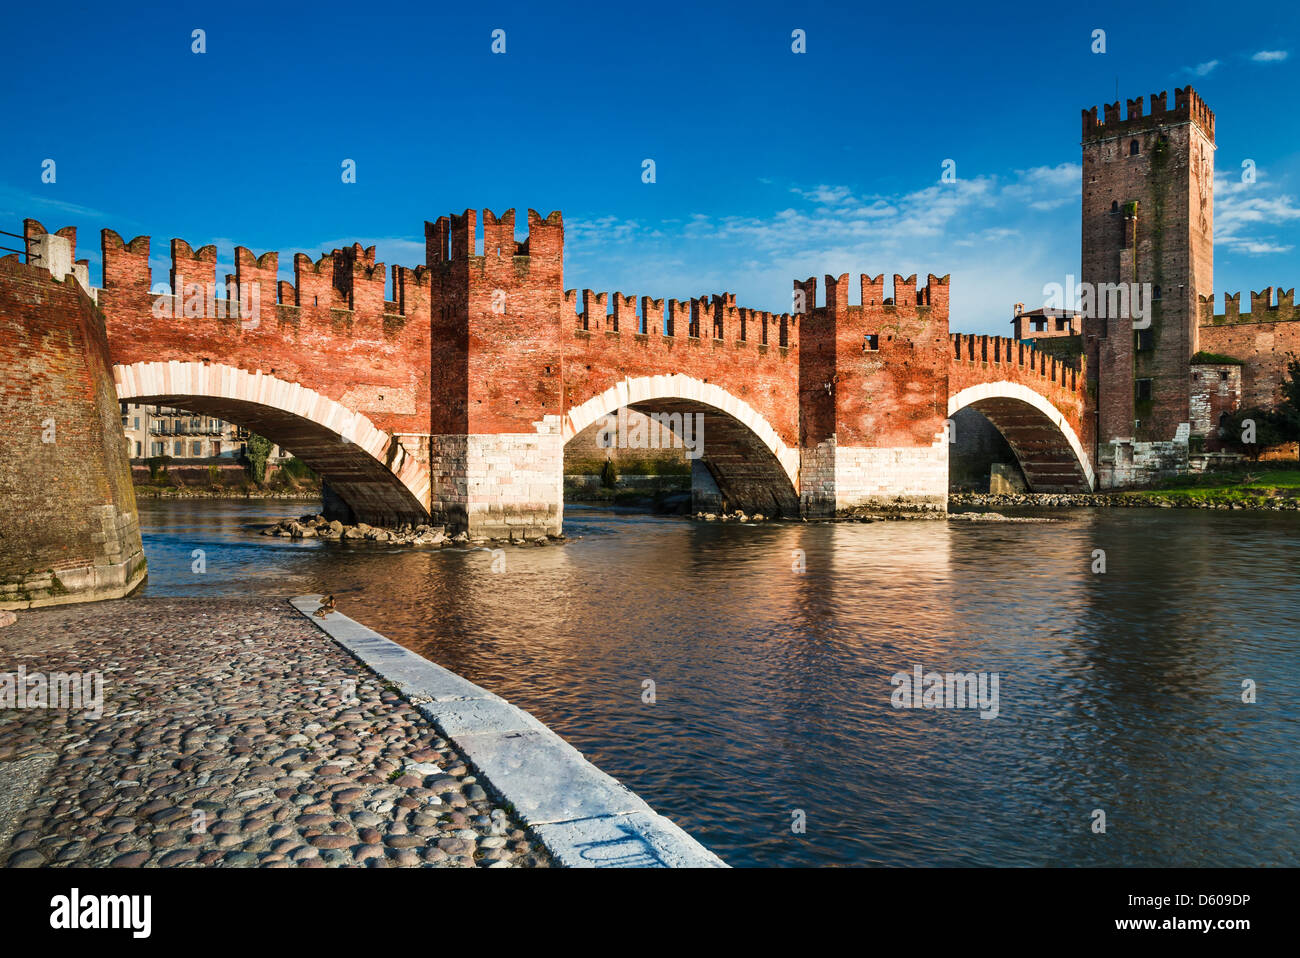 Vista del fiume Adige e medievale ponte in pietra del Ponte Scaligero di Verona, costruita nel XIV secolo nei pressi di Castelvecchio. L'Italia. Foto Stock